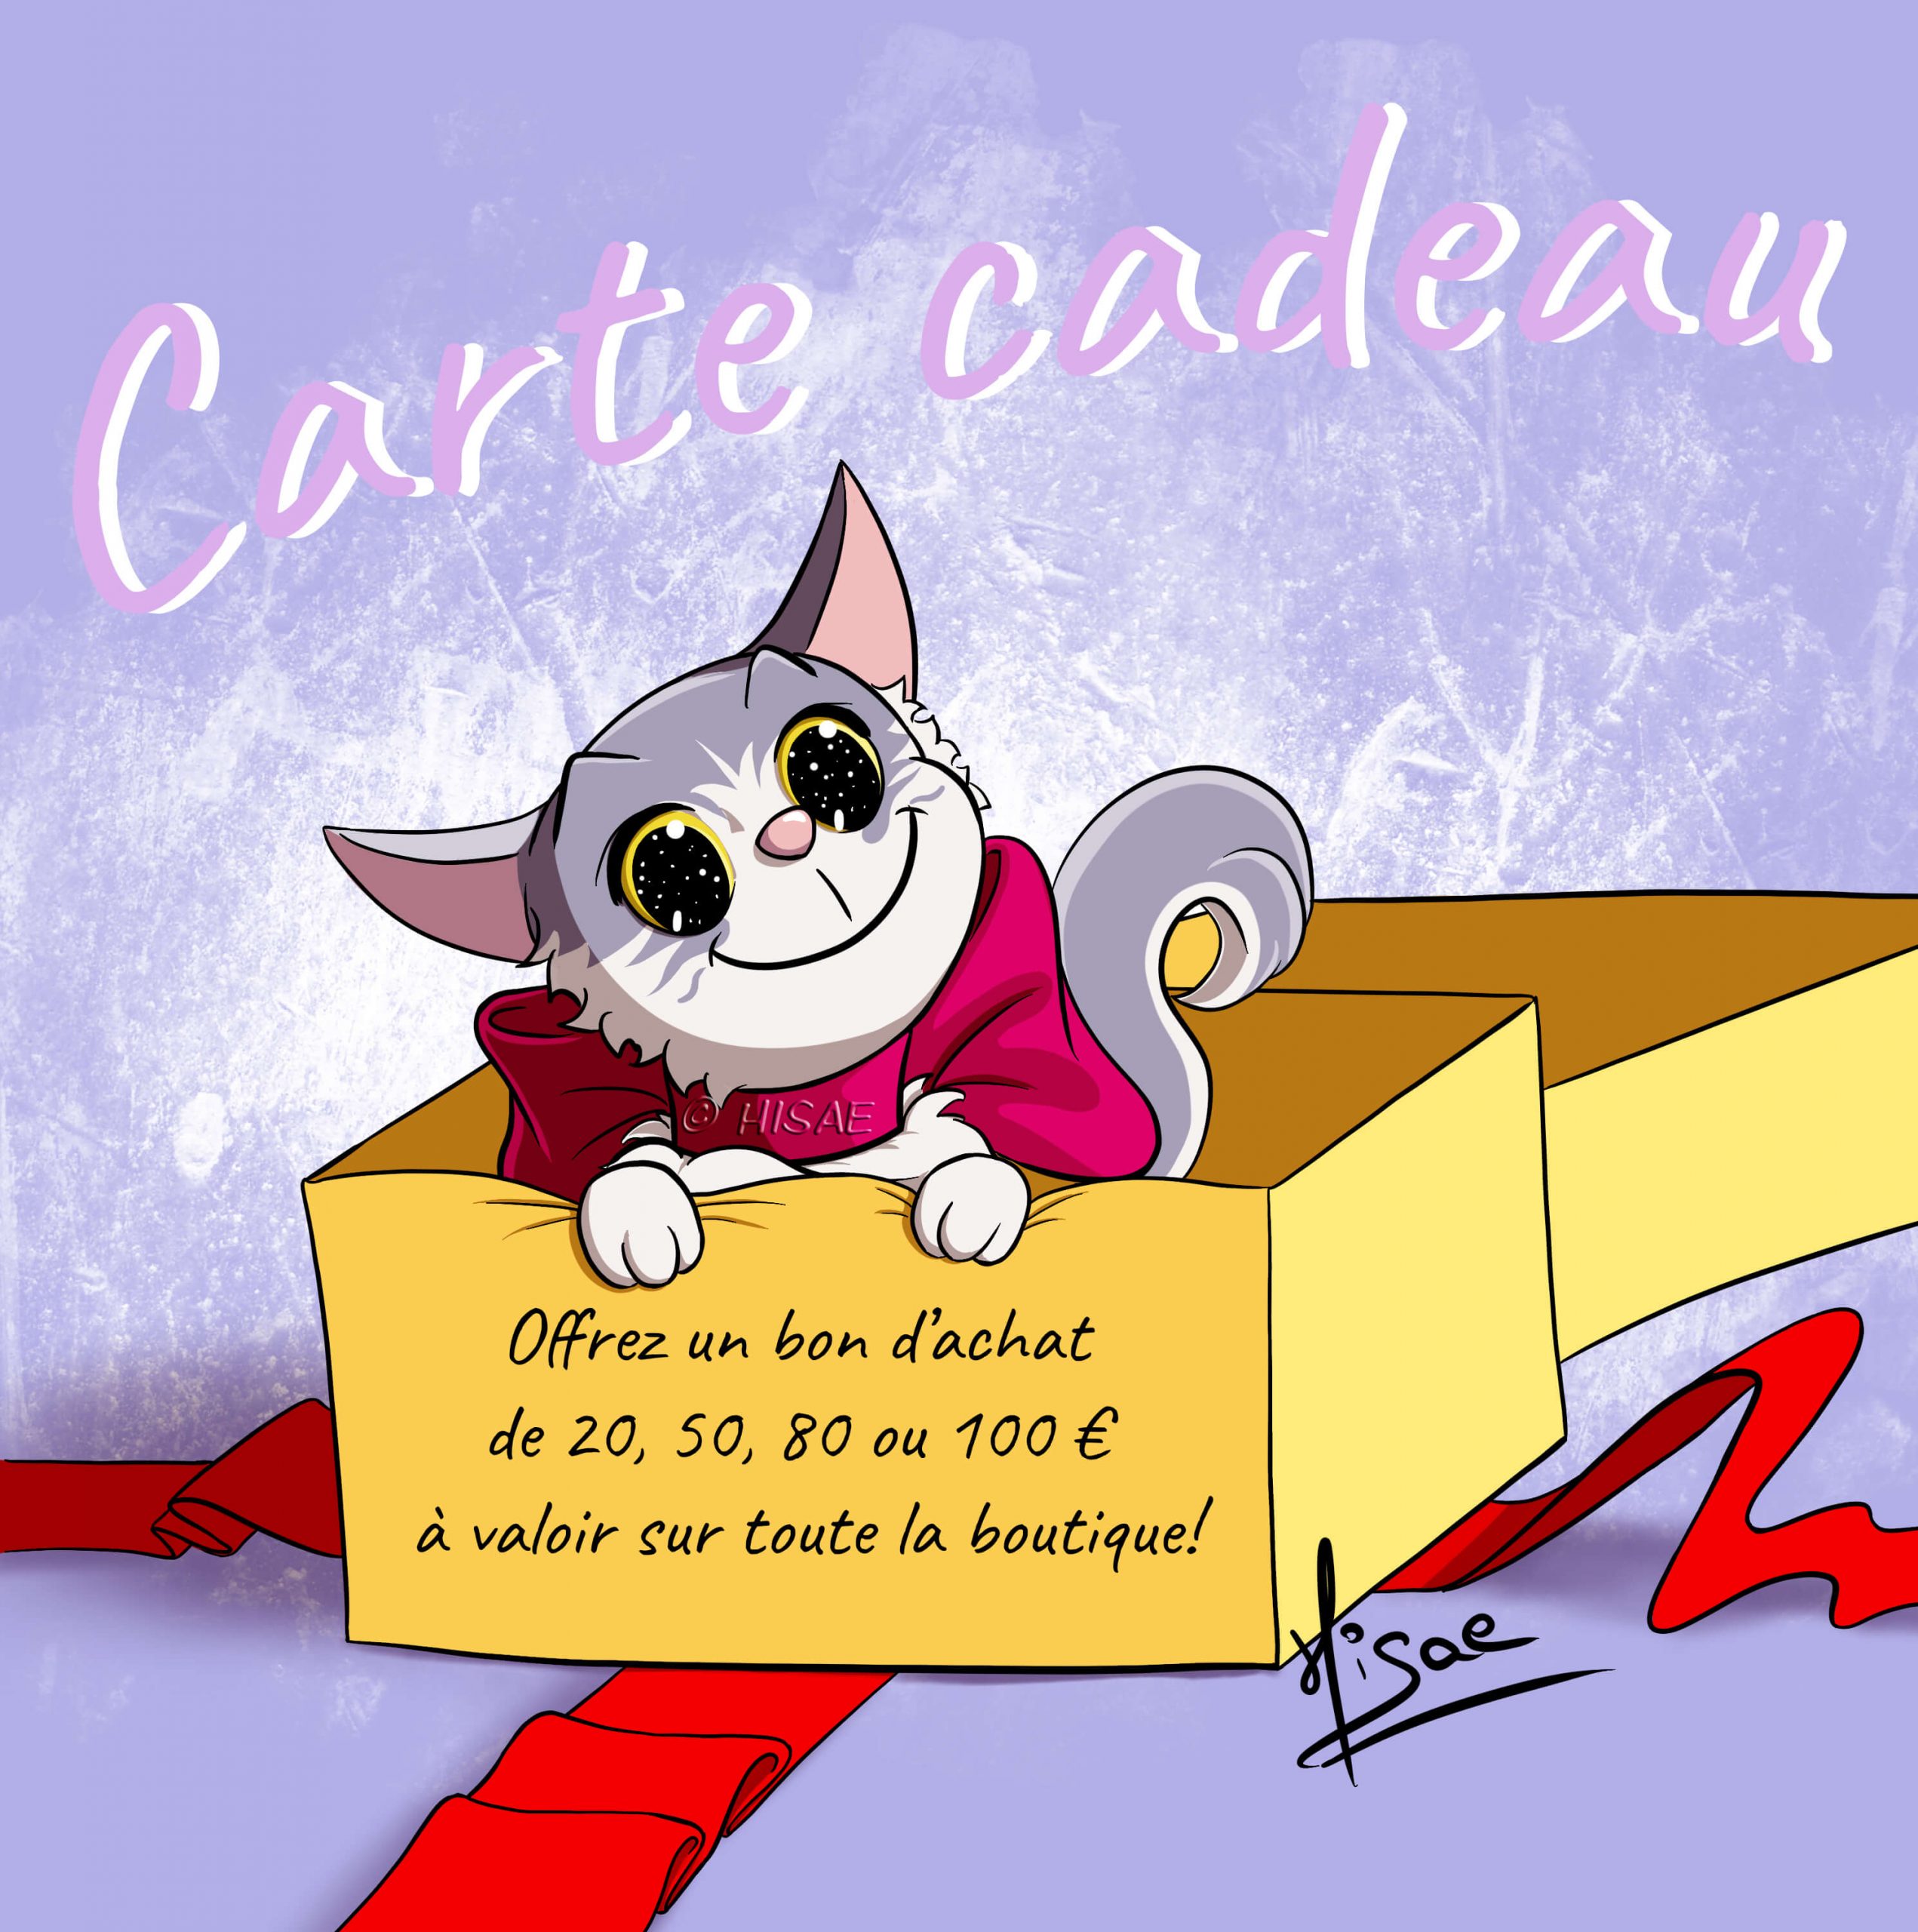 Dessin numérique pour la carte cadeau représentant un chaton sortant d'un paquet cadeau ©Hisae illustrations